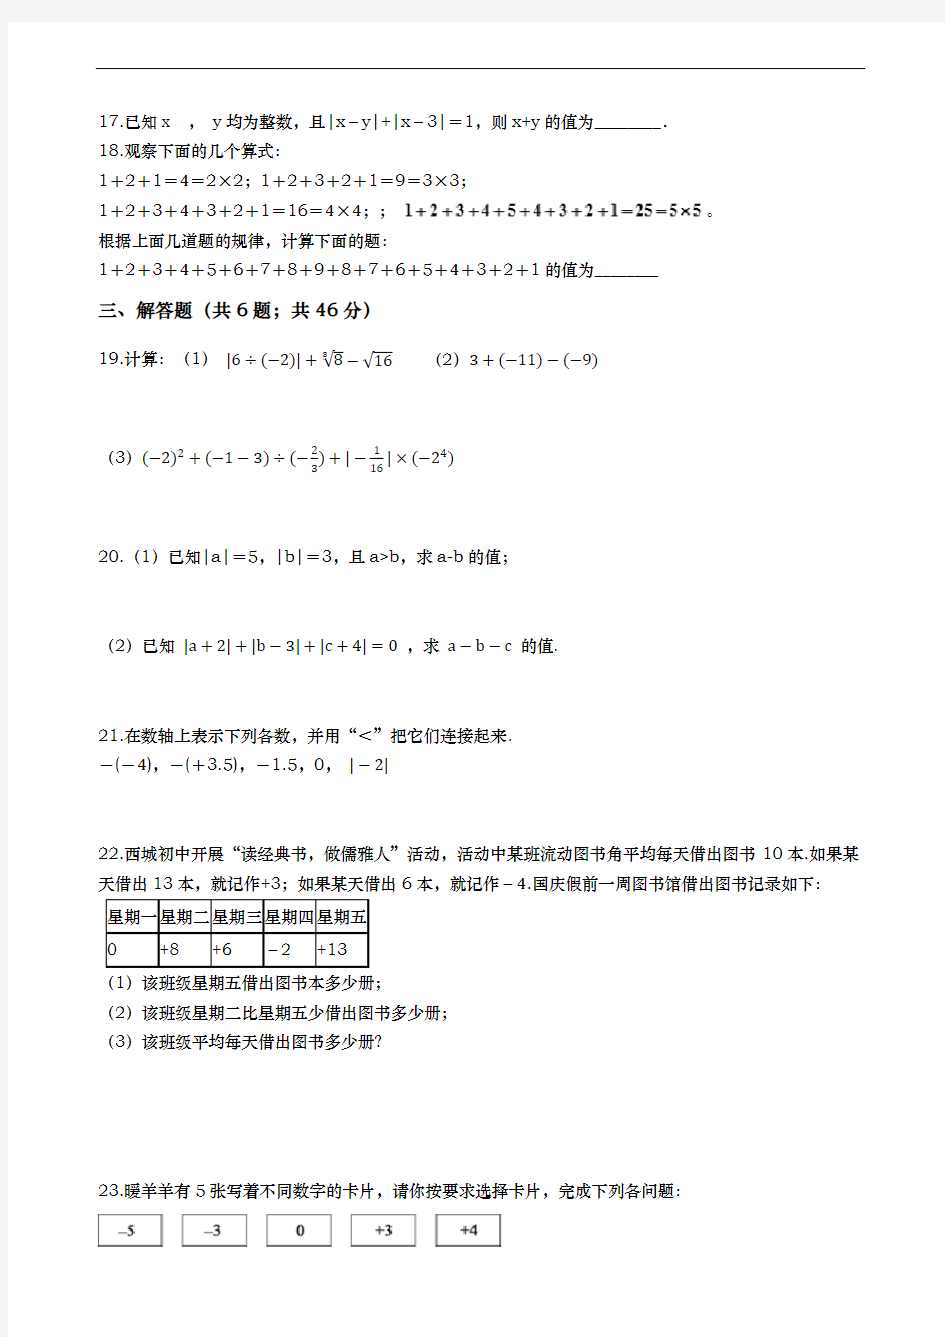 2020-2021学年度第一学期浙江省温州市瑞安市七年级期中考试数学试卷(含解答)